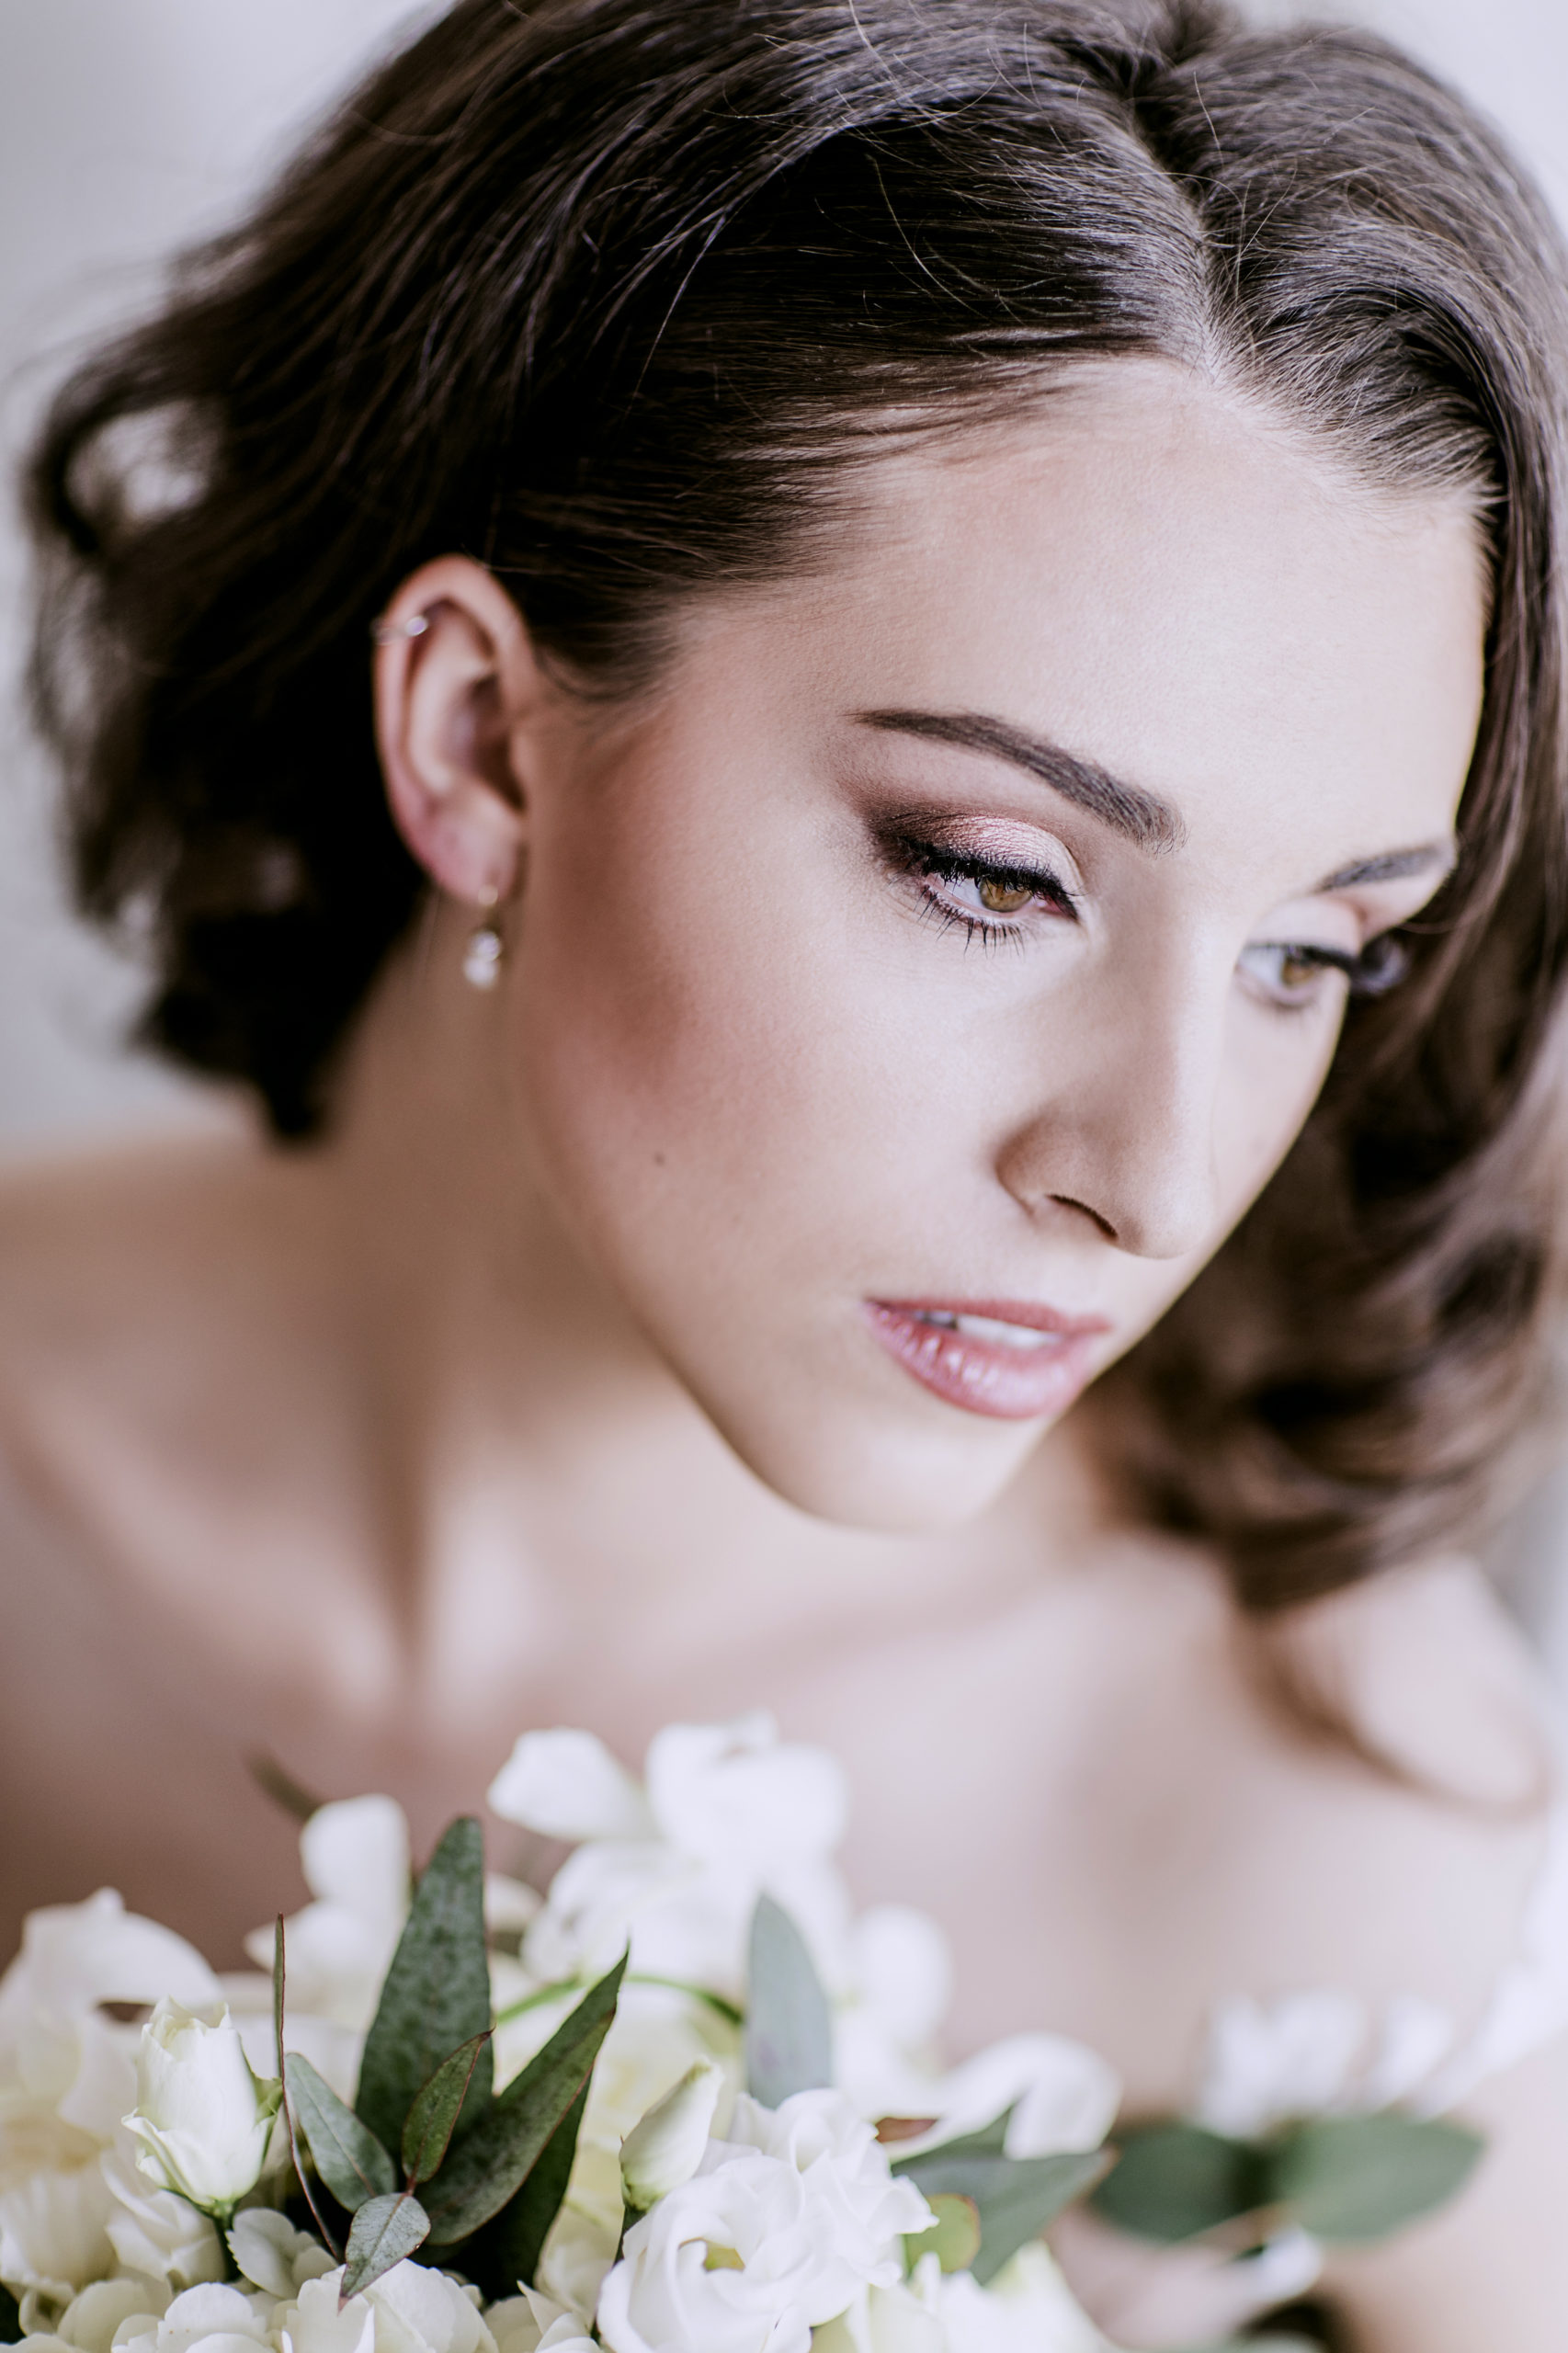 Klassisch elegante Braut mit cleanem schicken Glam Make-Up